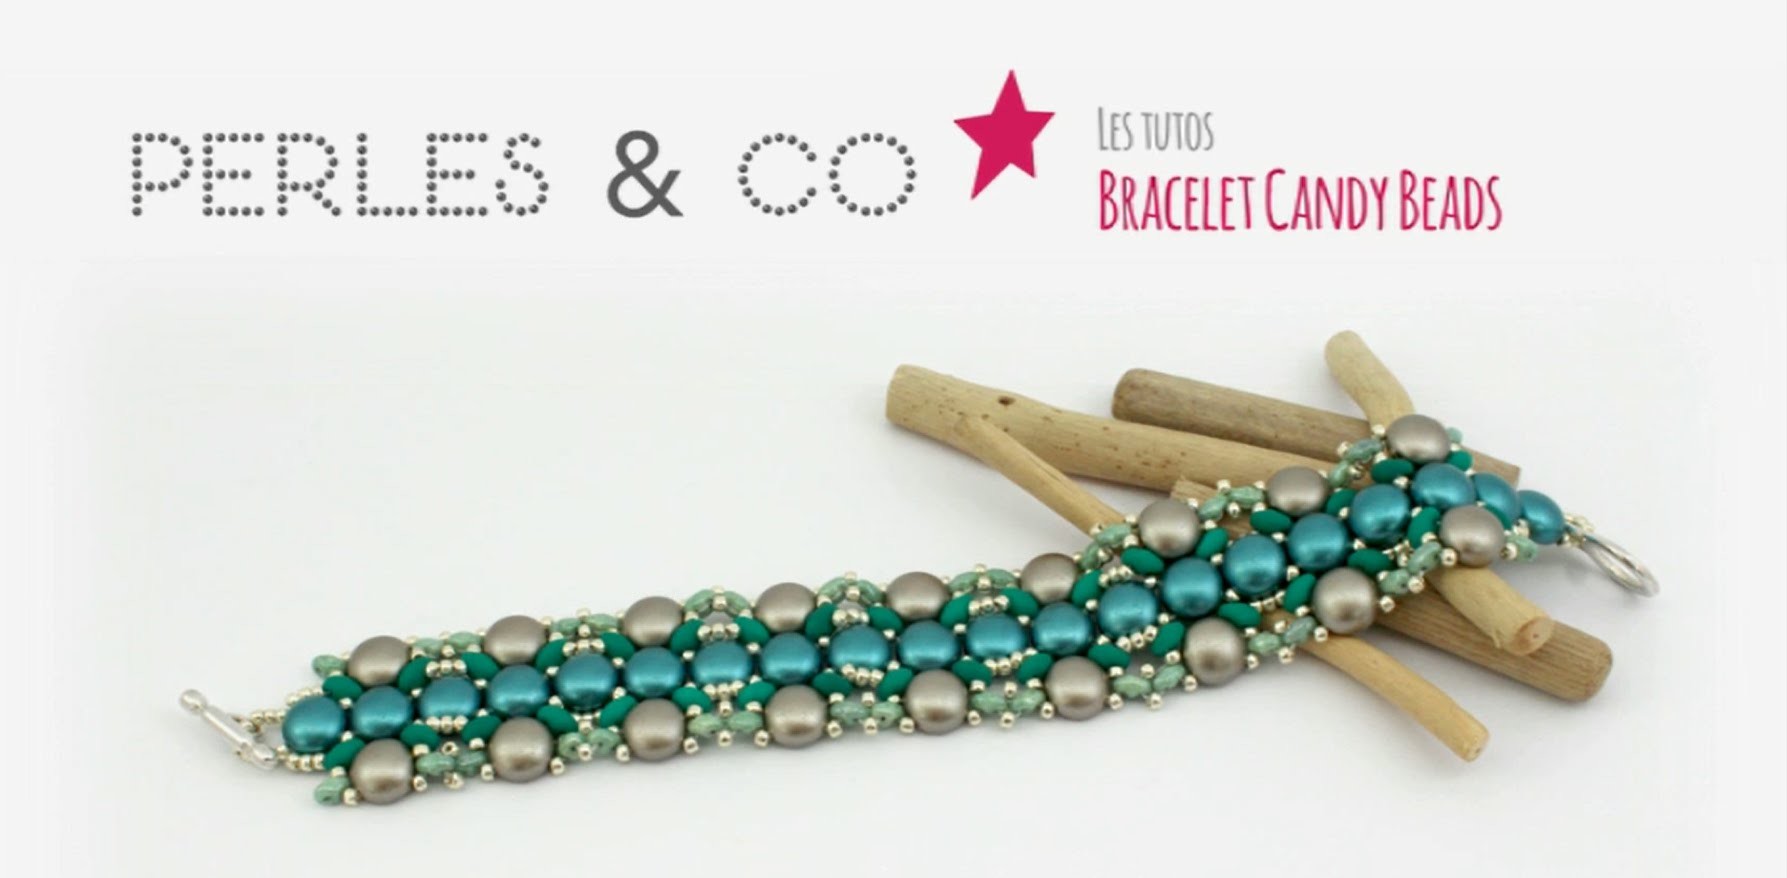 DIY Tuto Schéma Création Bijou Perles : Faire un Bracelet Tissé en Perles Candy Beads - Perles&Co